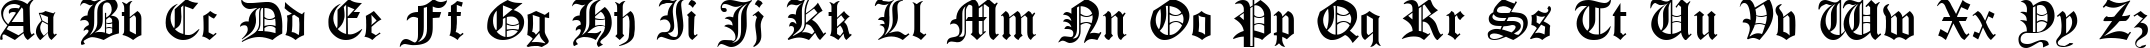 Пример написания английского алфавита шрифтом Gothic